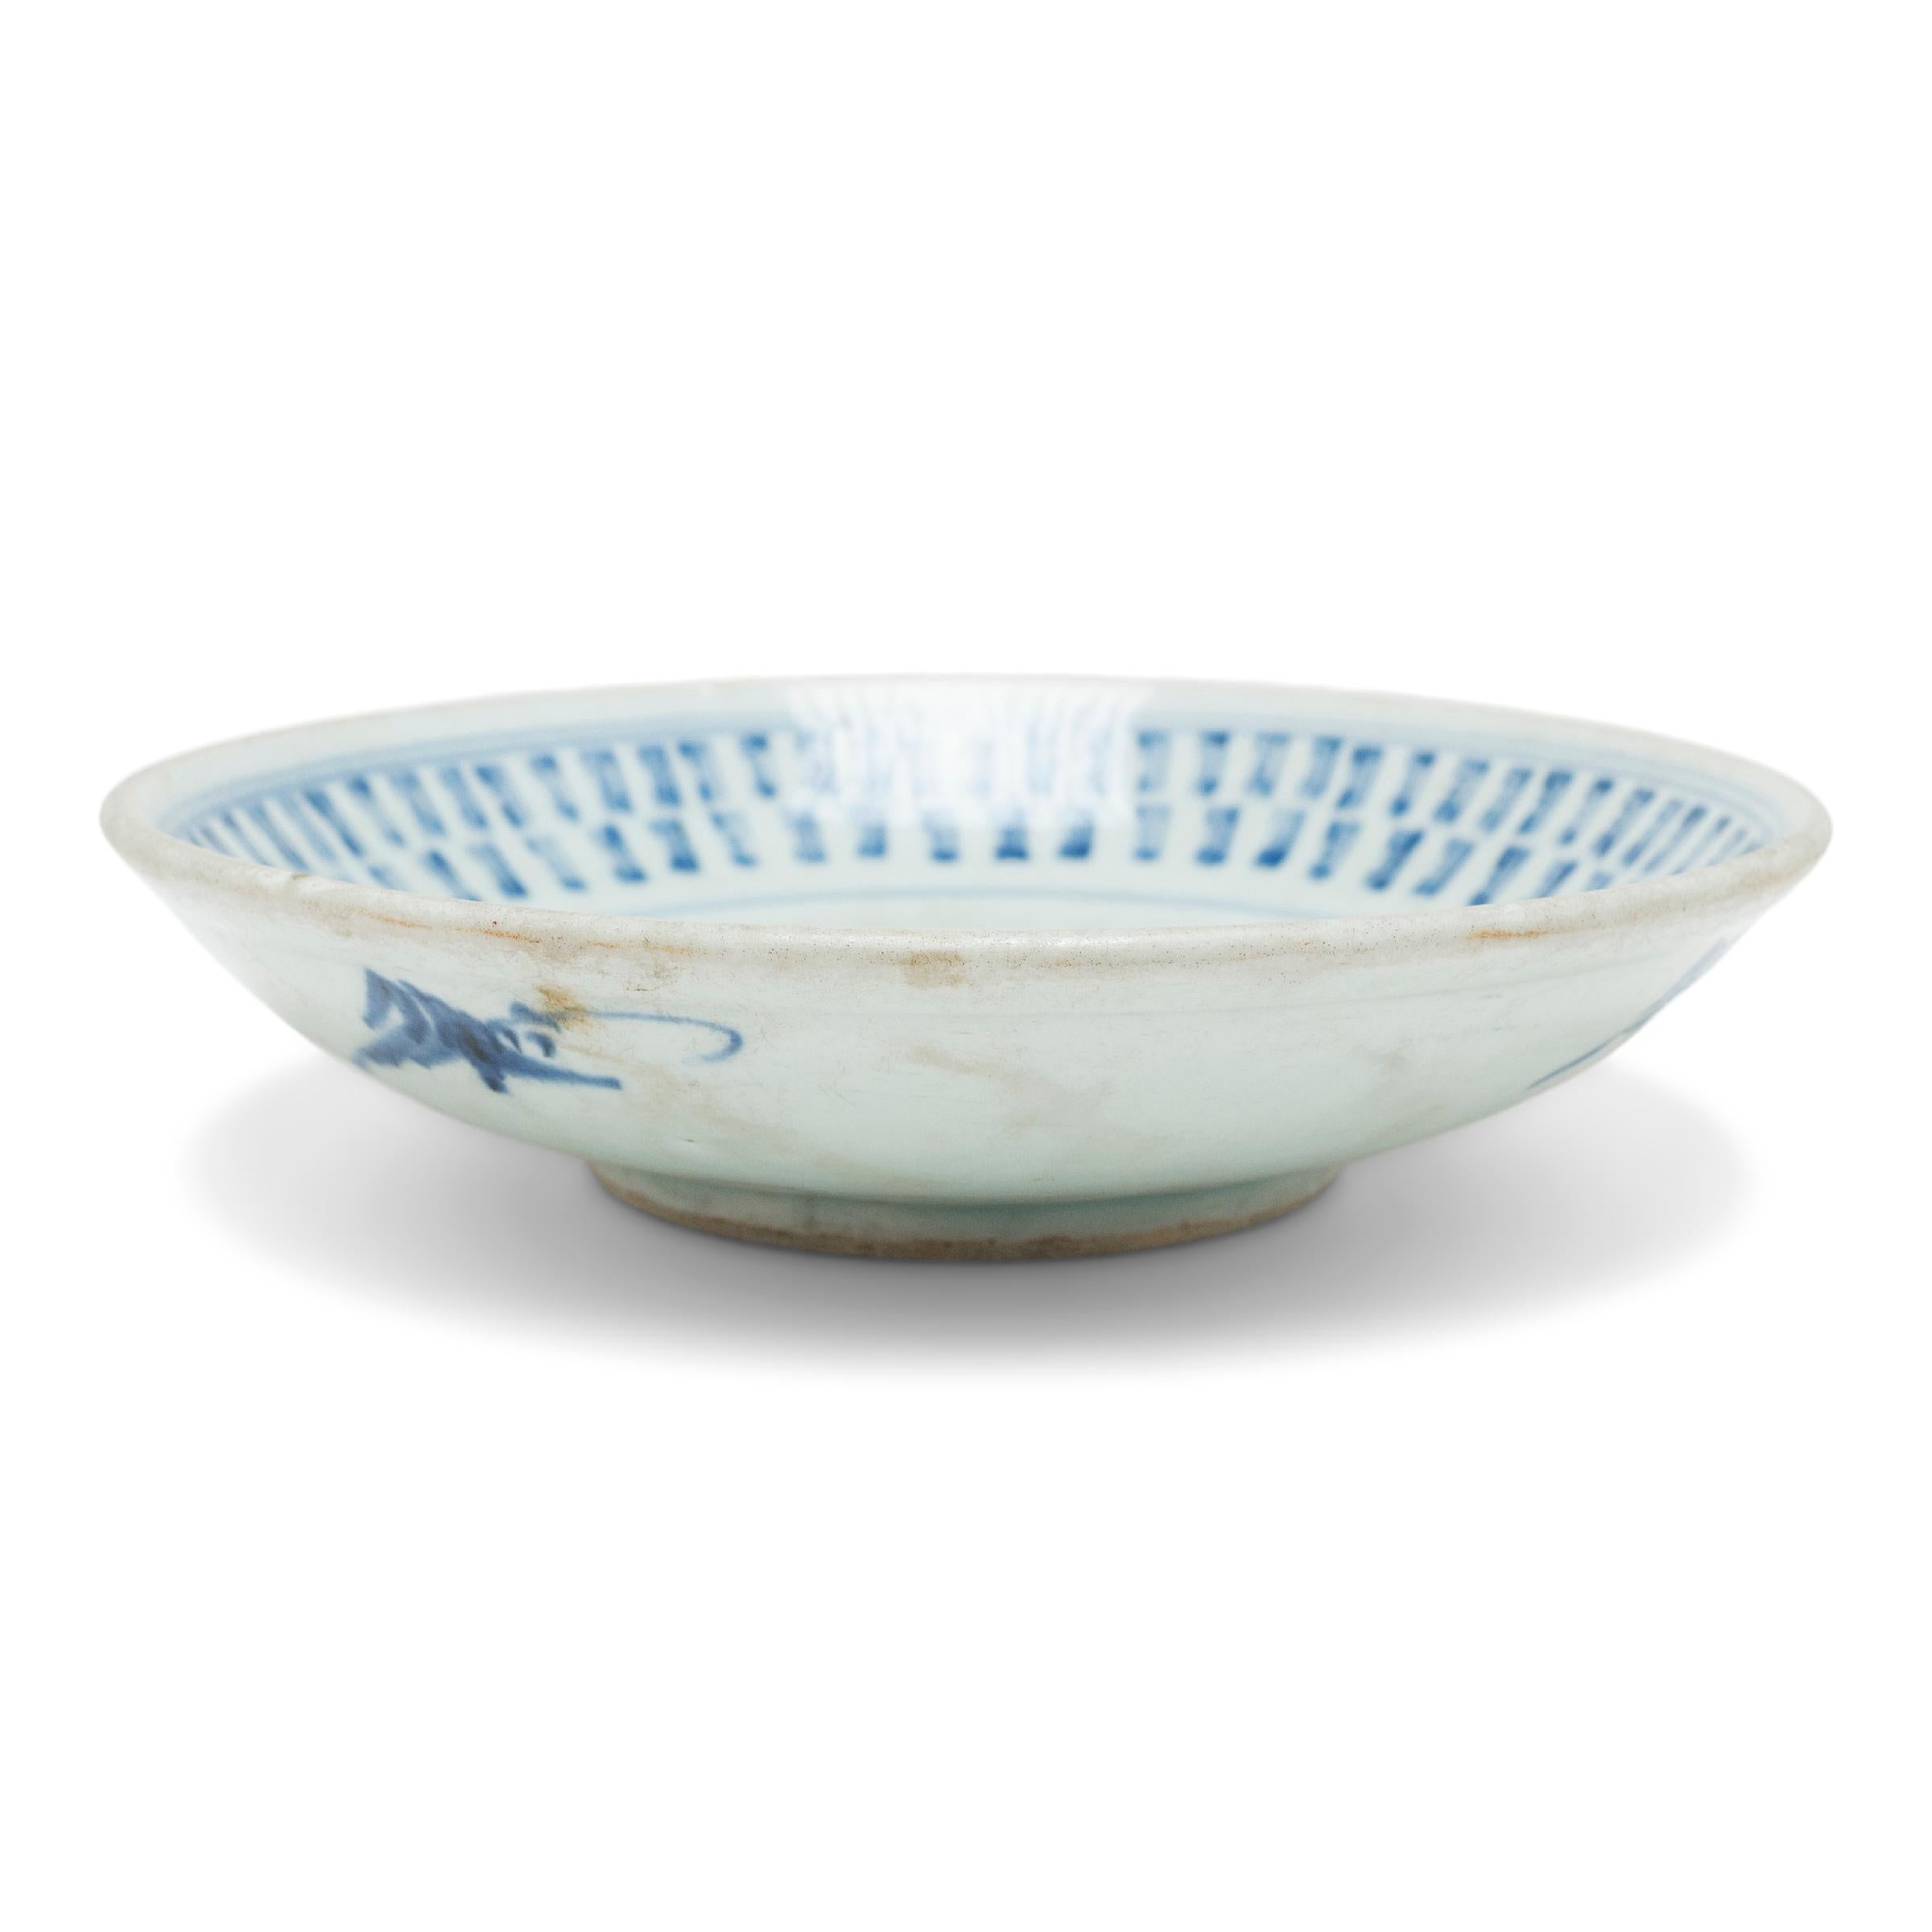 Cette assiette à pied du milieu du XIXe siècle est décorée dans le style bleu et blanc d'un motif géométrique et curviligne estampé. Au centre de l'assiette se trouve un médaillon en forme d'étoile rempli de méandres floraux et entouré d'une bordure